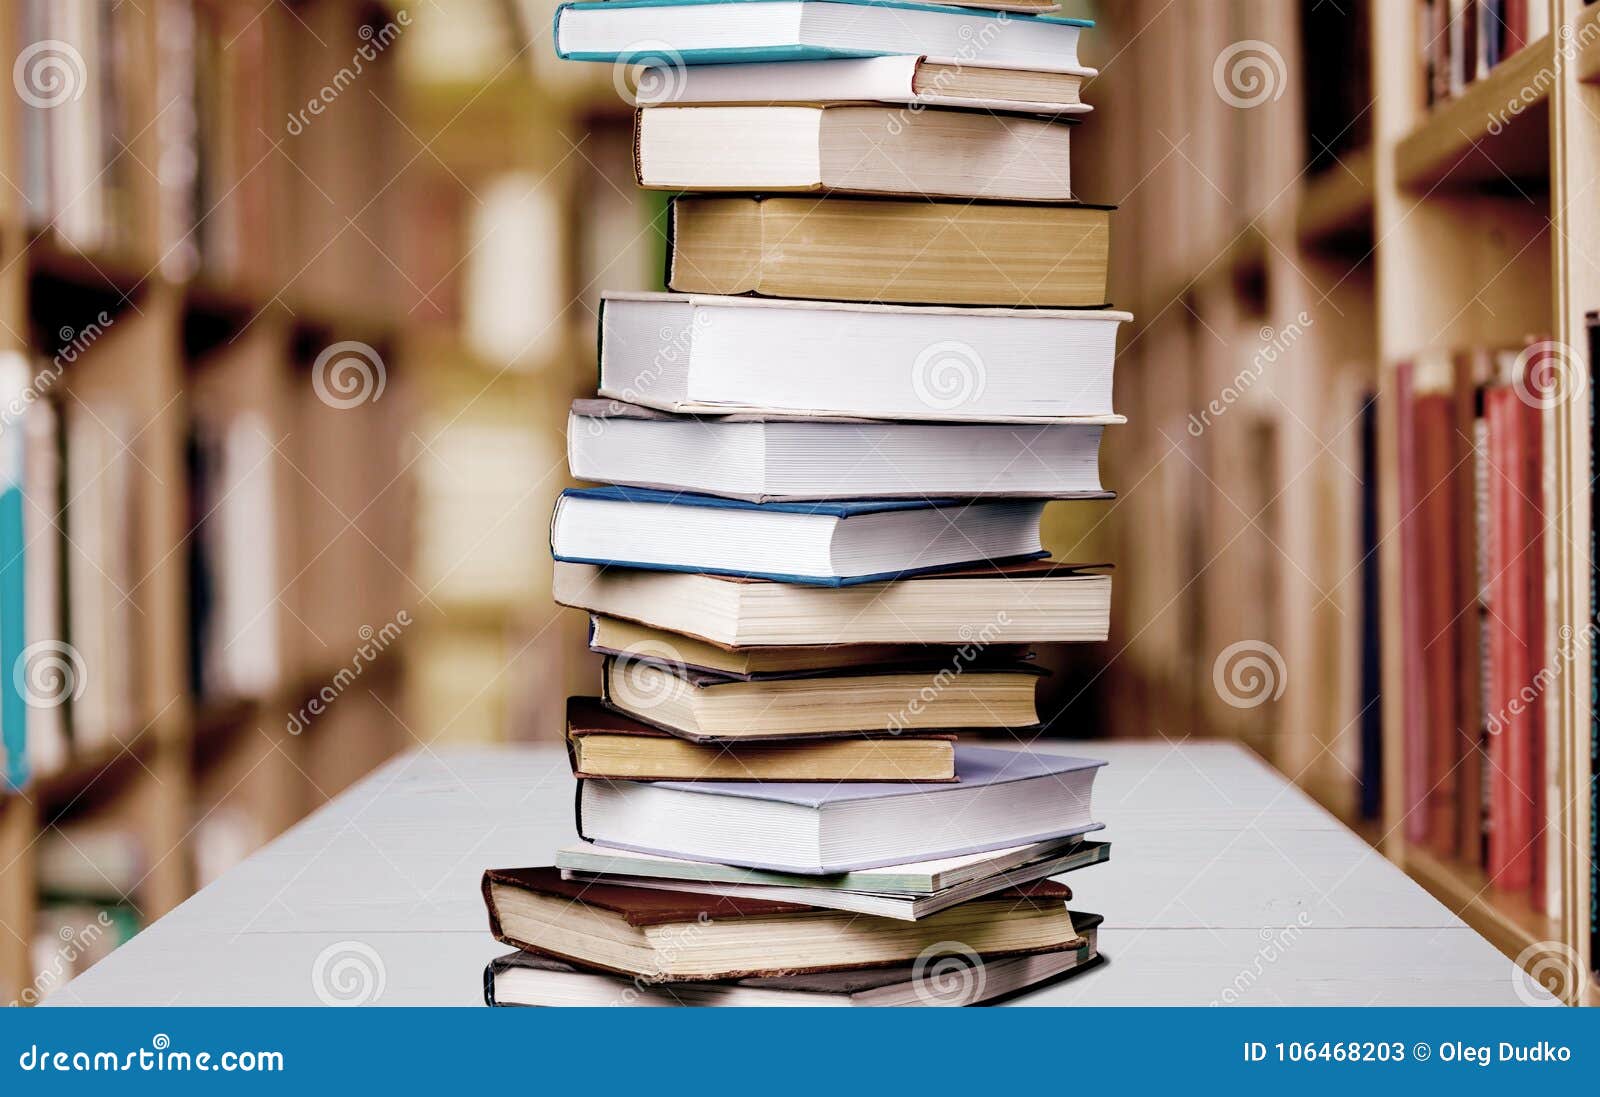 Новый университет книга. Стопка книг. Стопка книг в руках. Фотография стопки книг. Стопка книг в библиотеке.